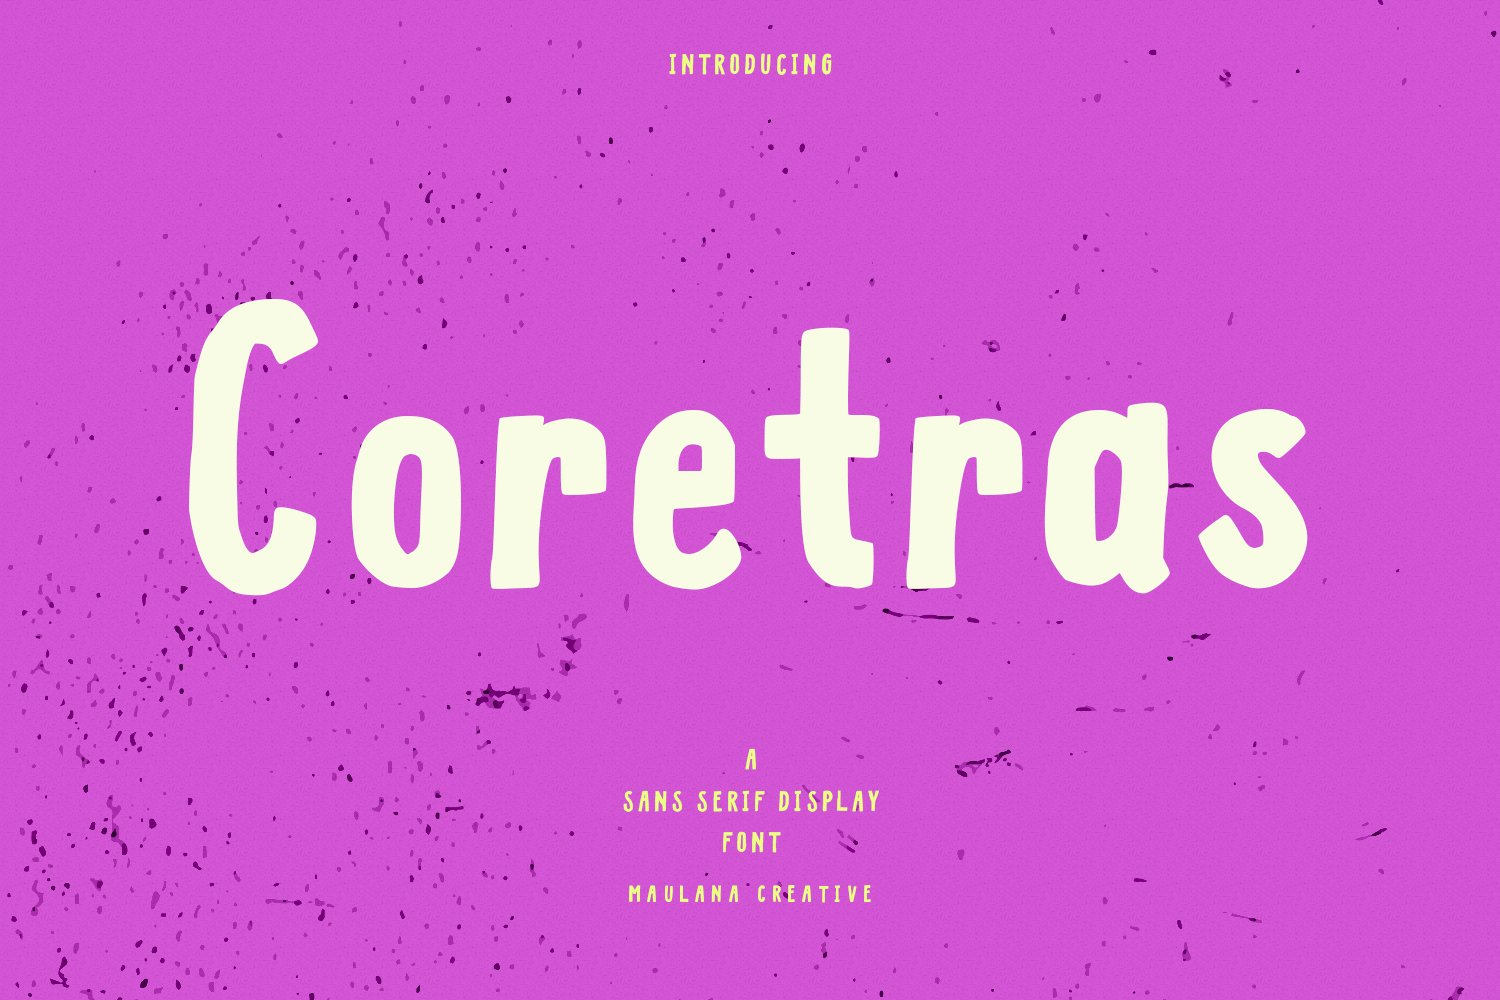 Coretras Handwritten Sans Font cover image.